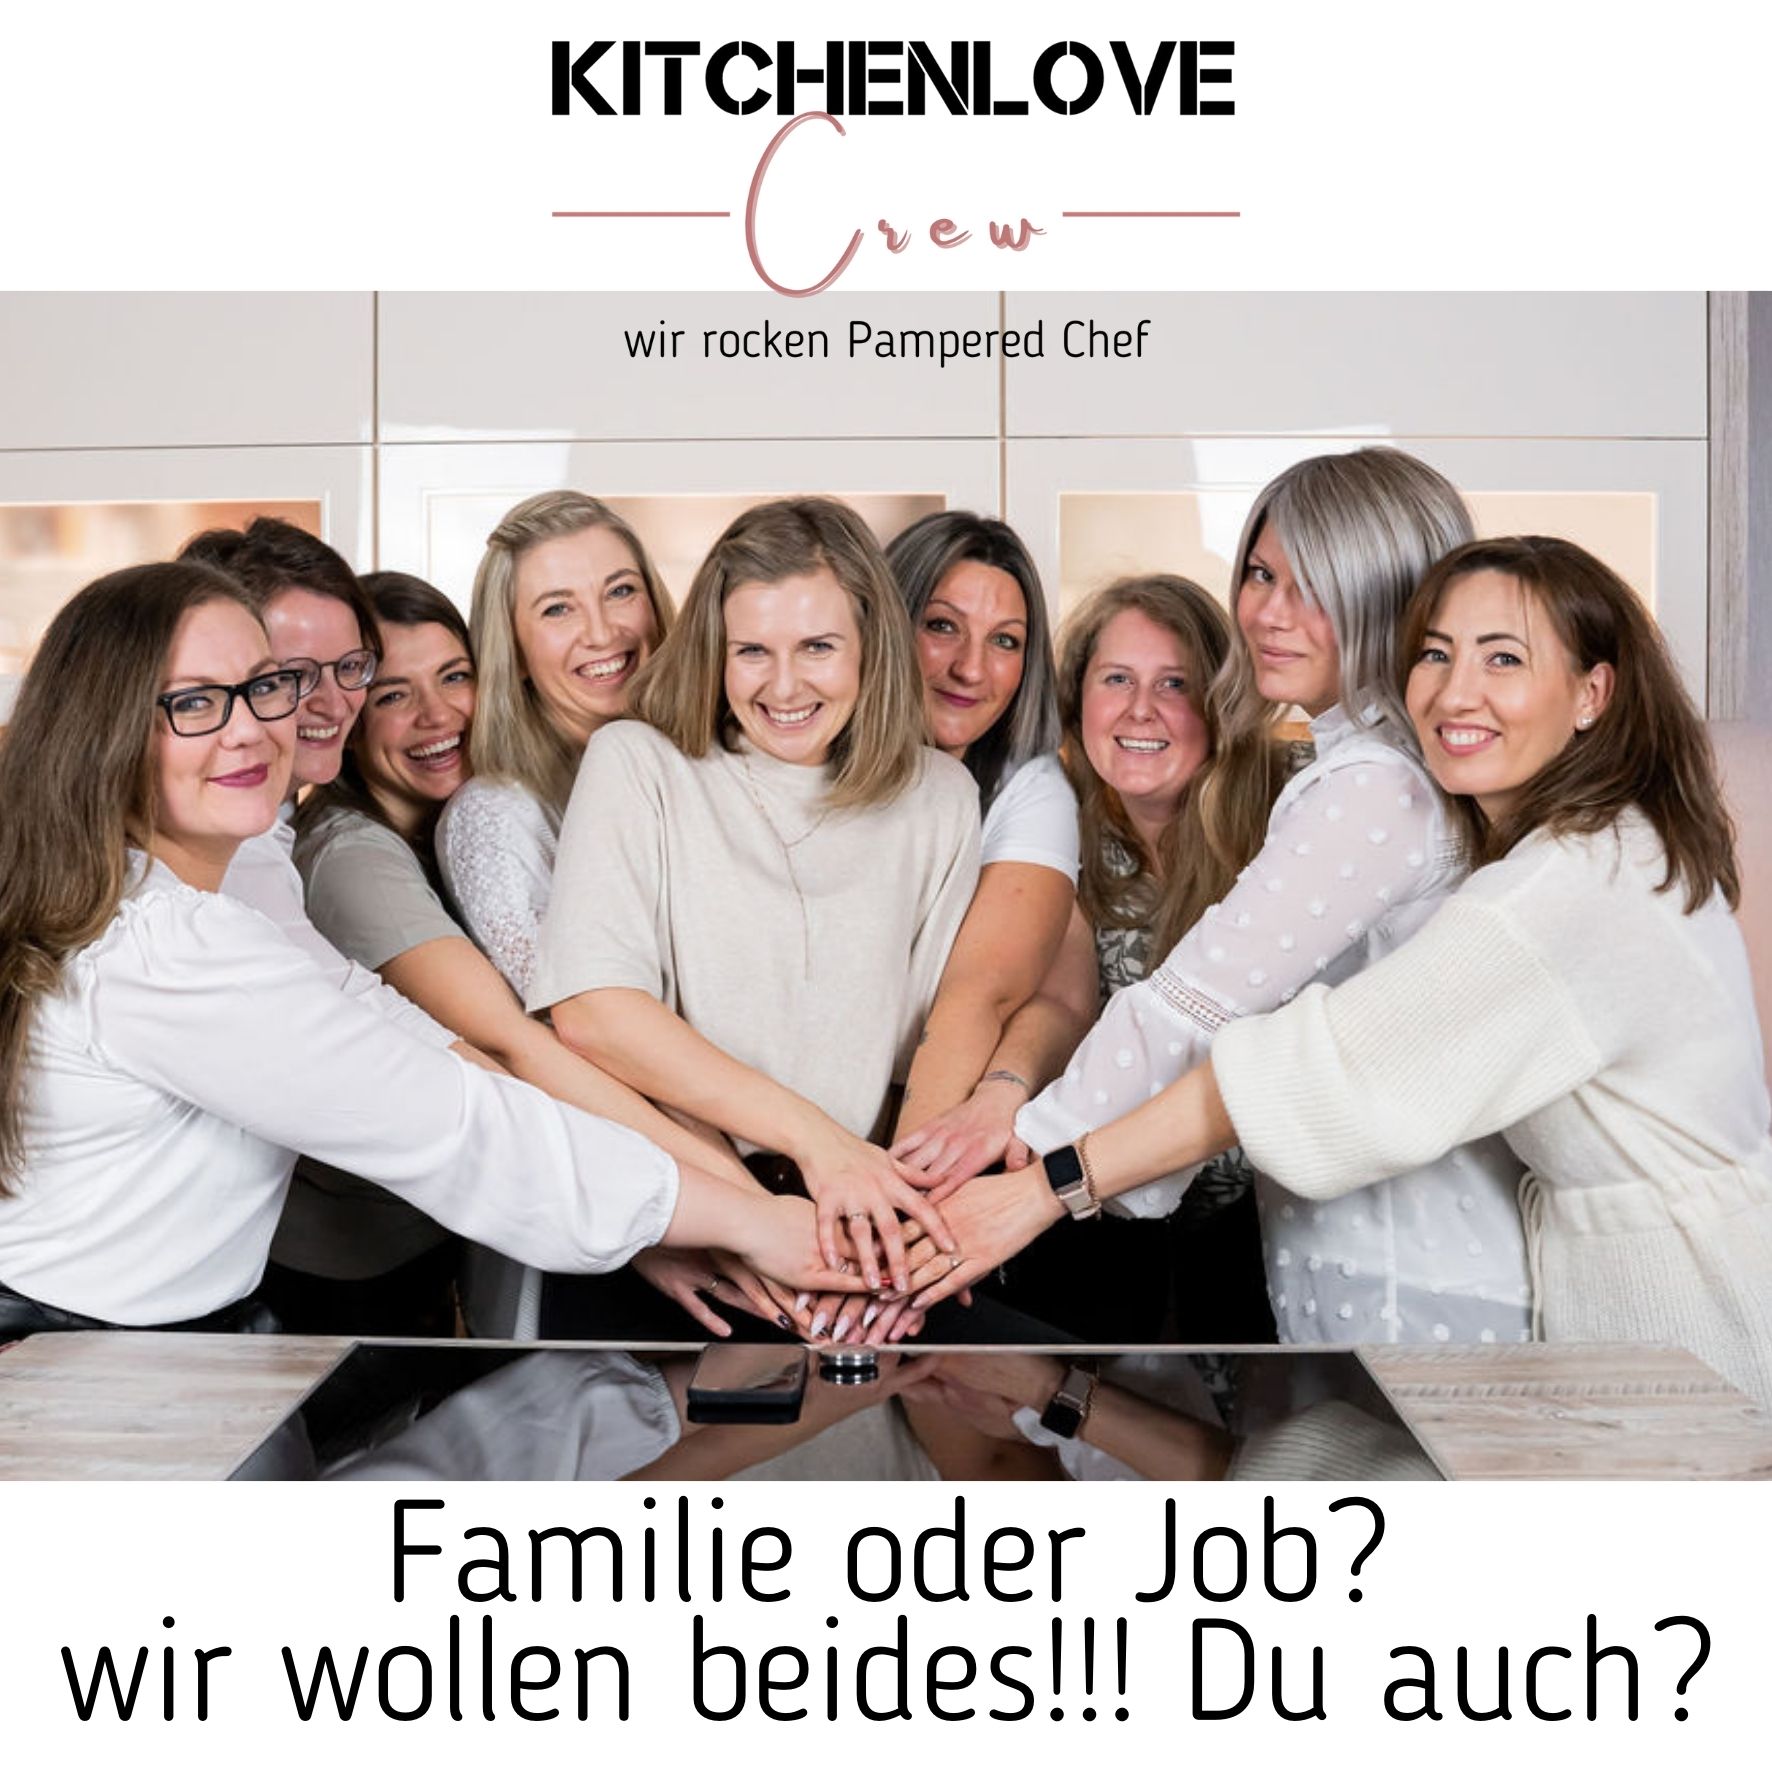 Kitchenlove Crew